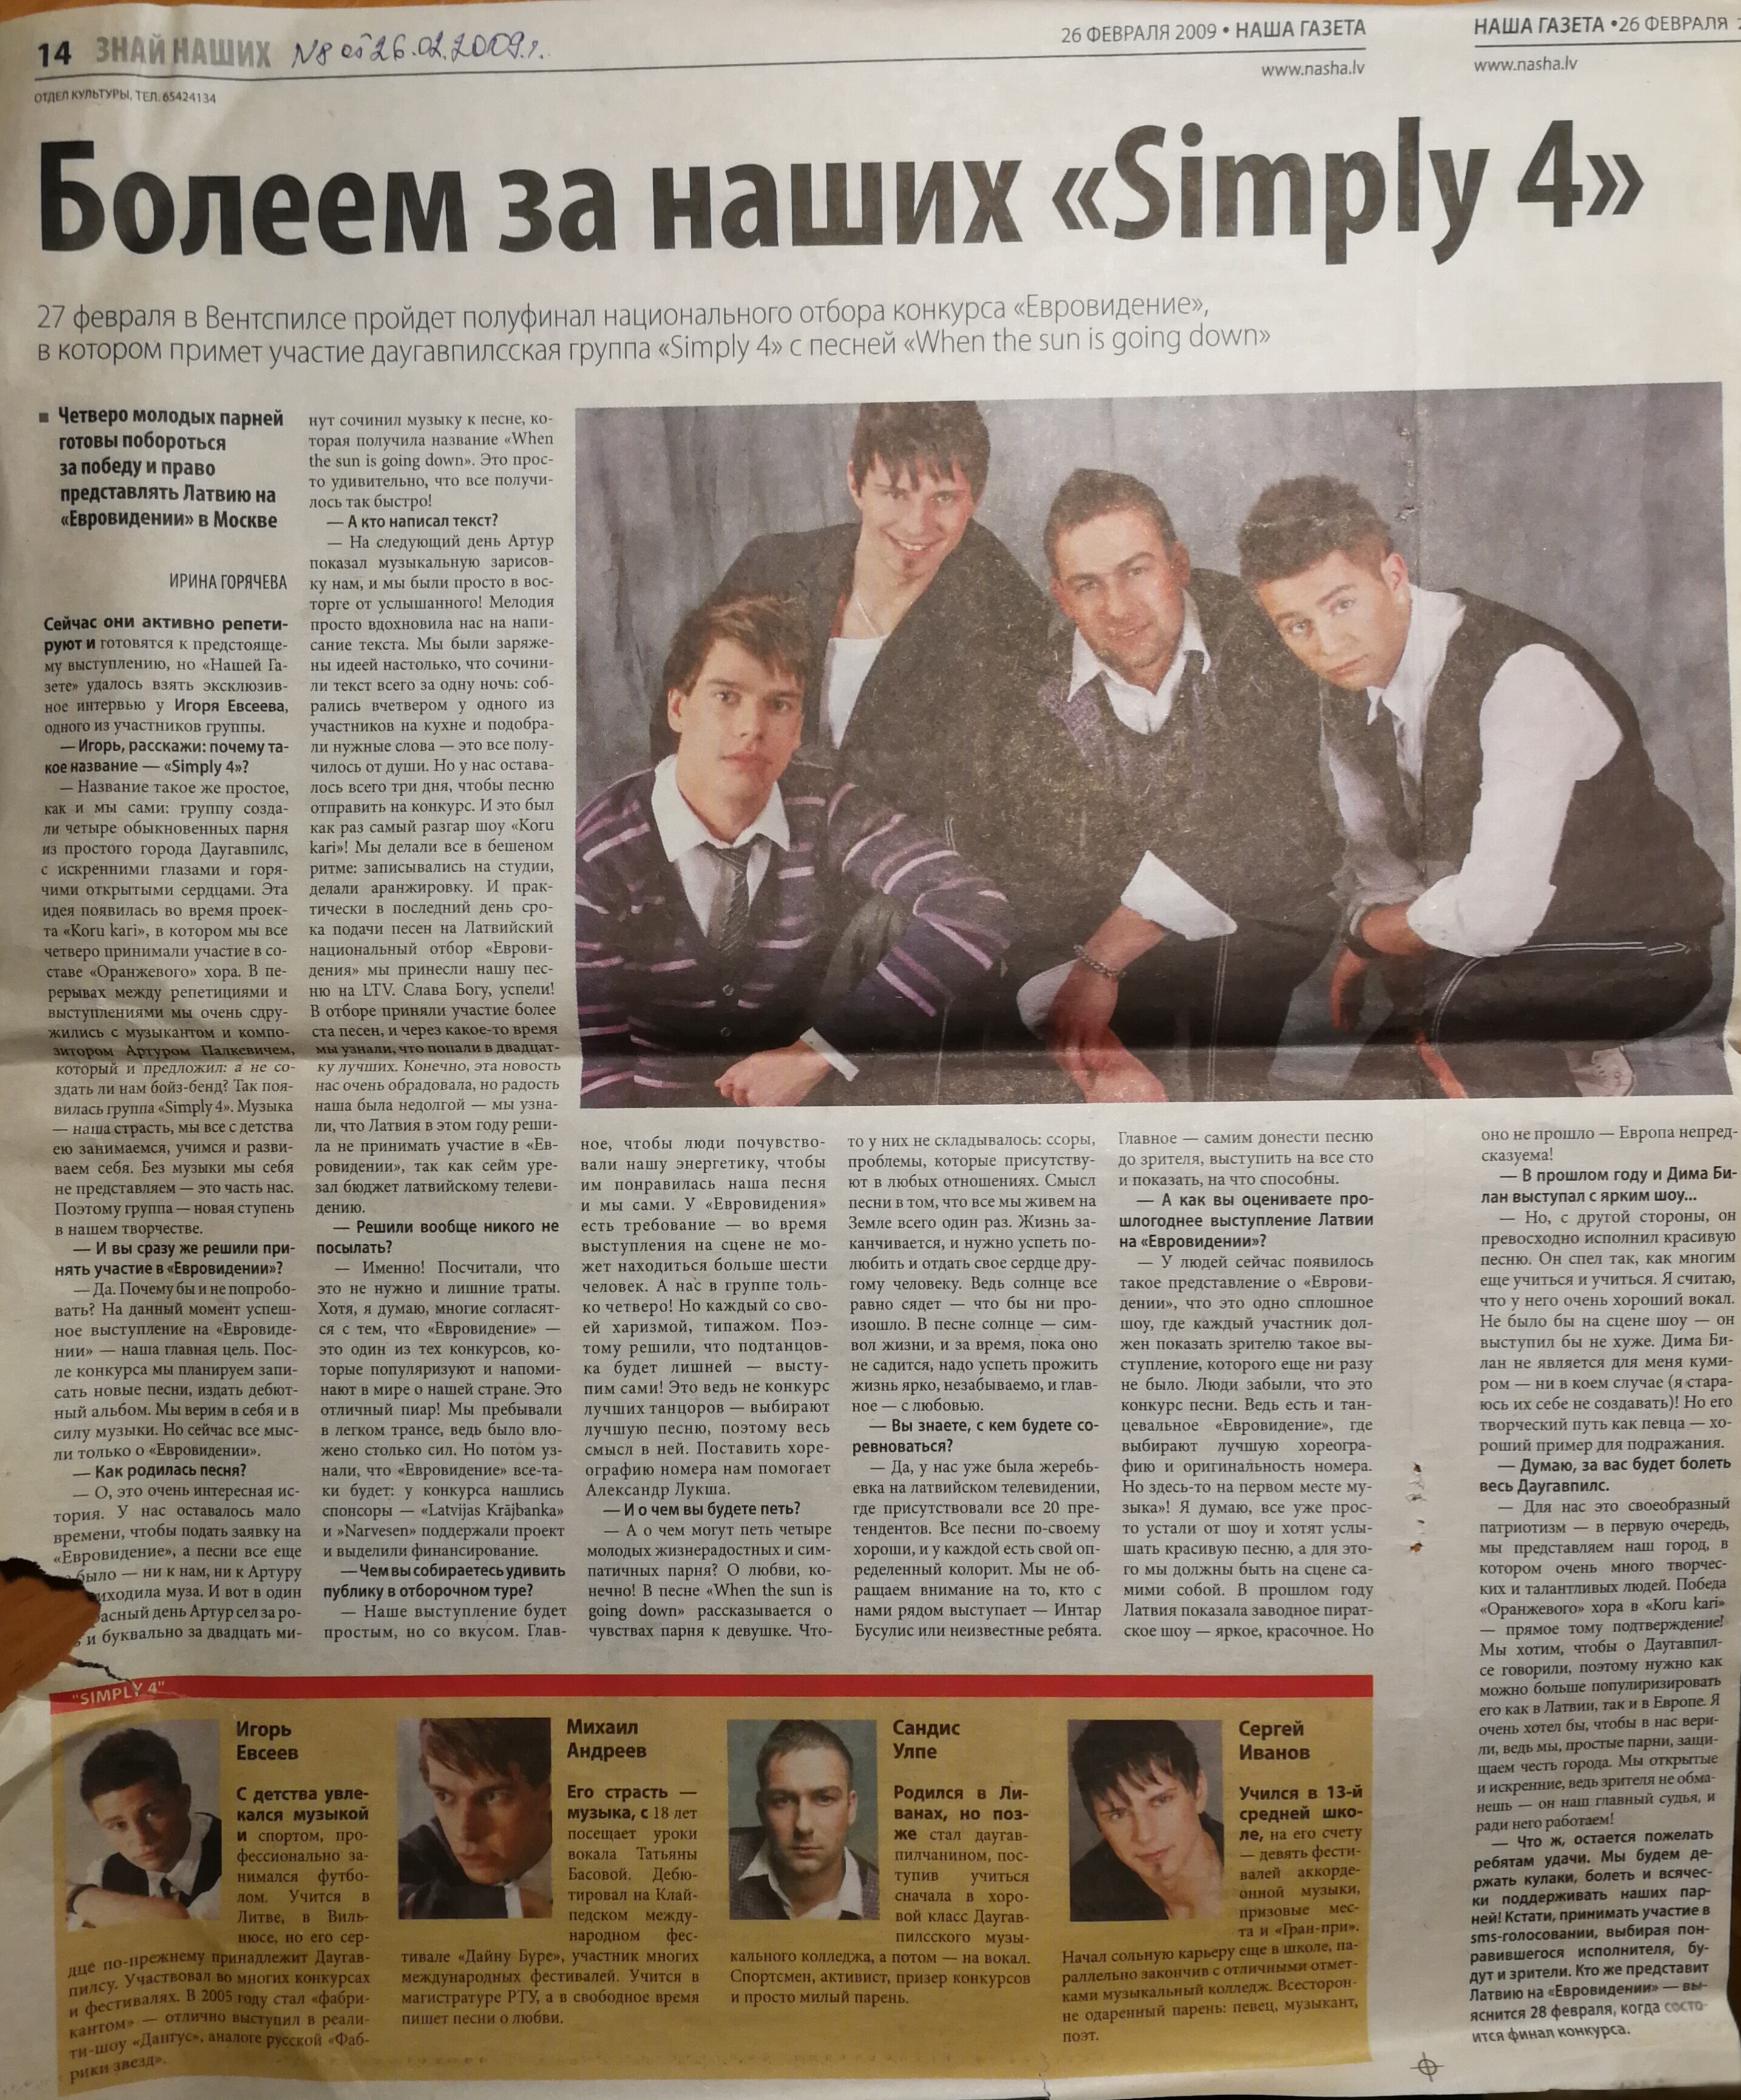 Simply 4, avīze Наша Газета